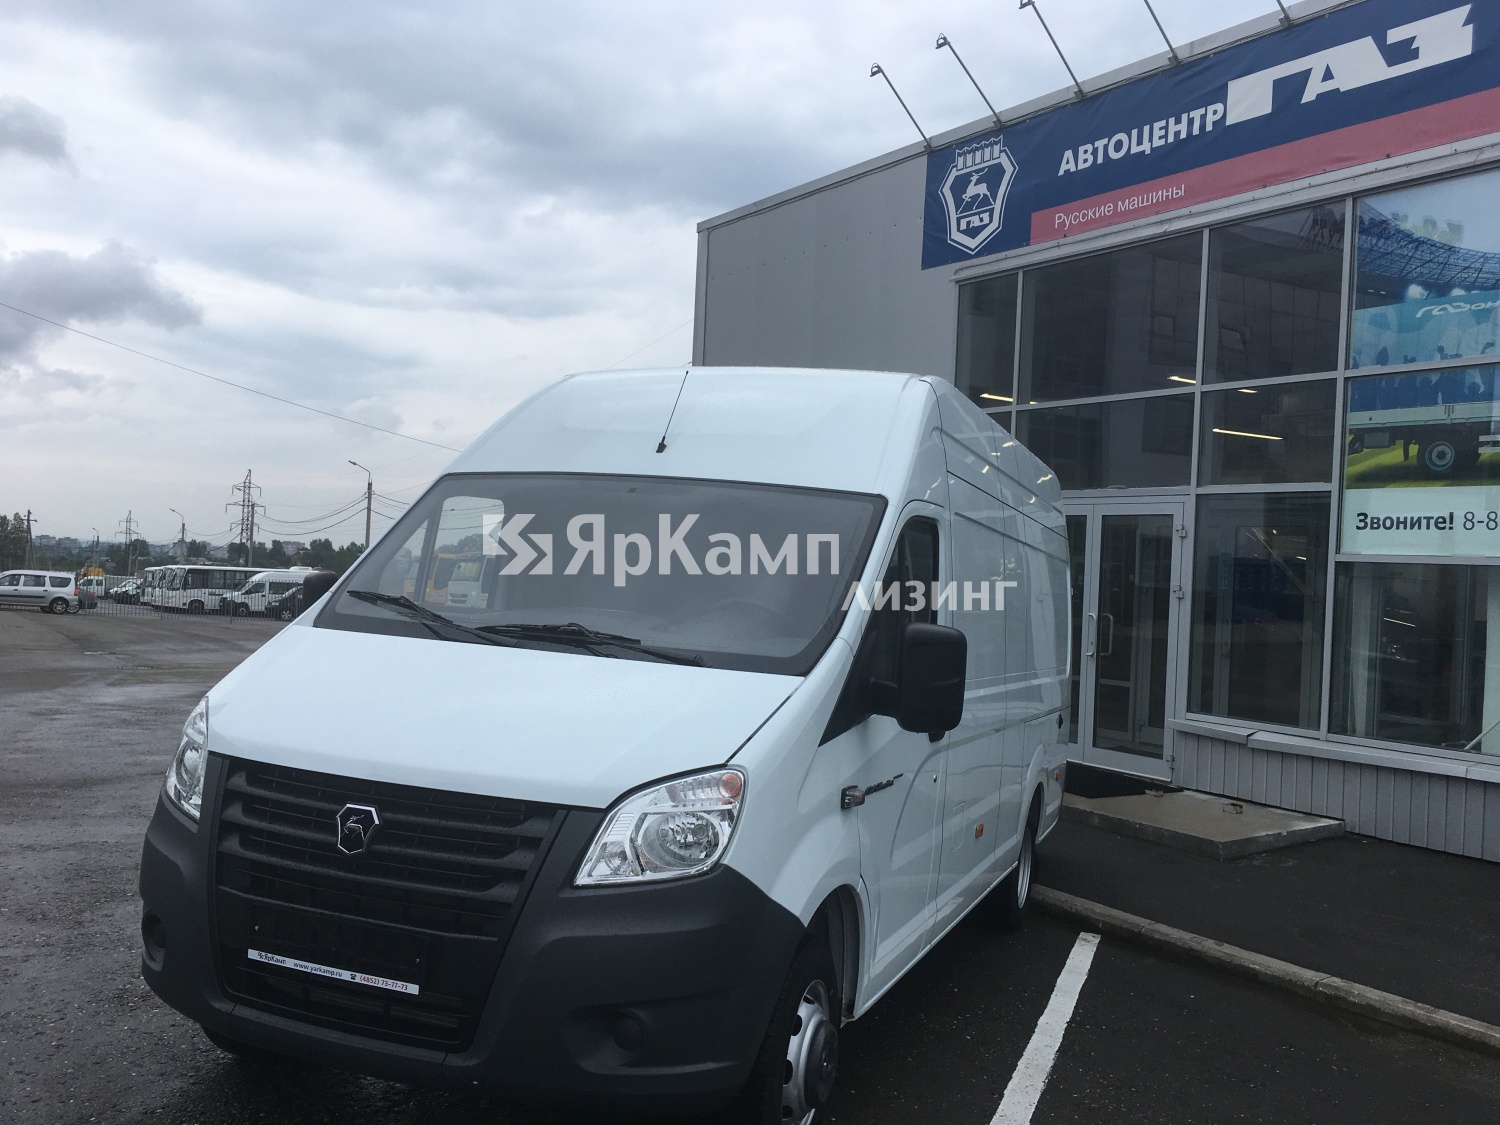 Цельнометаллический фургон ГАЗель Next A31R32 отгружен на правах финансовой аренды